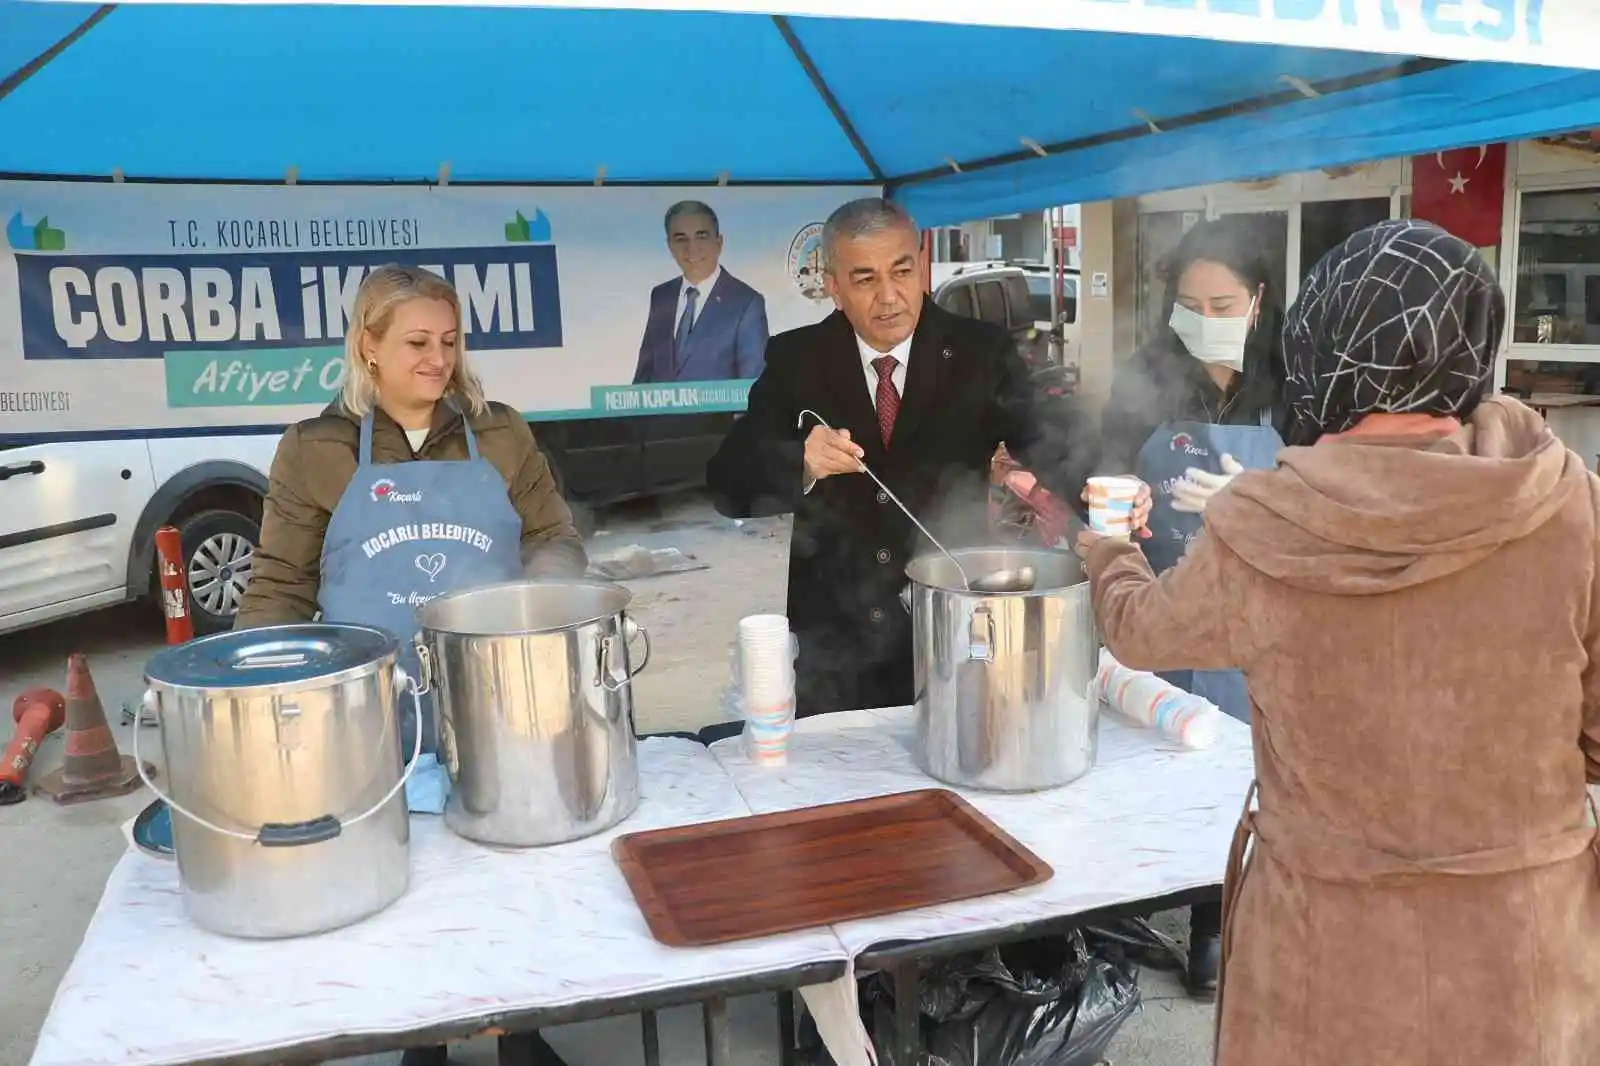 Koçarlı Belediyesi’nden vatandaşlara sıcak çorba ikramı
